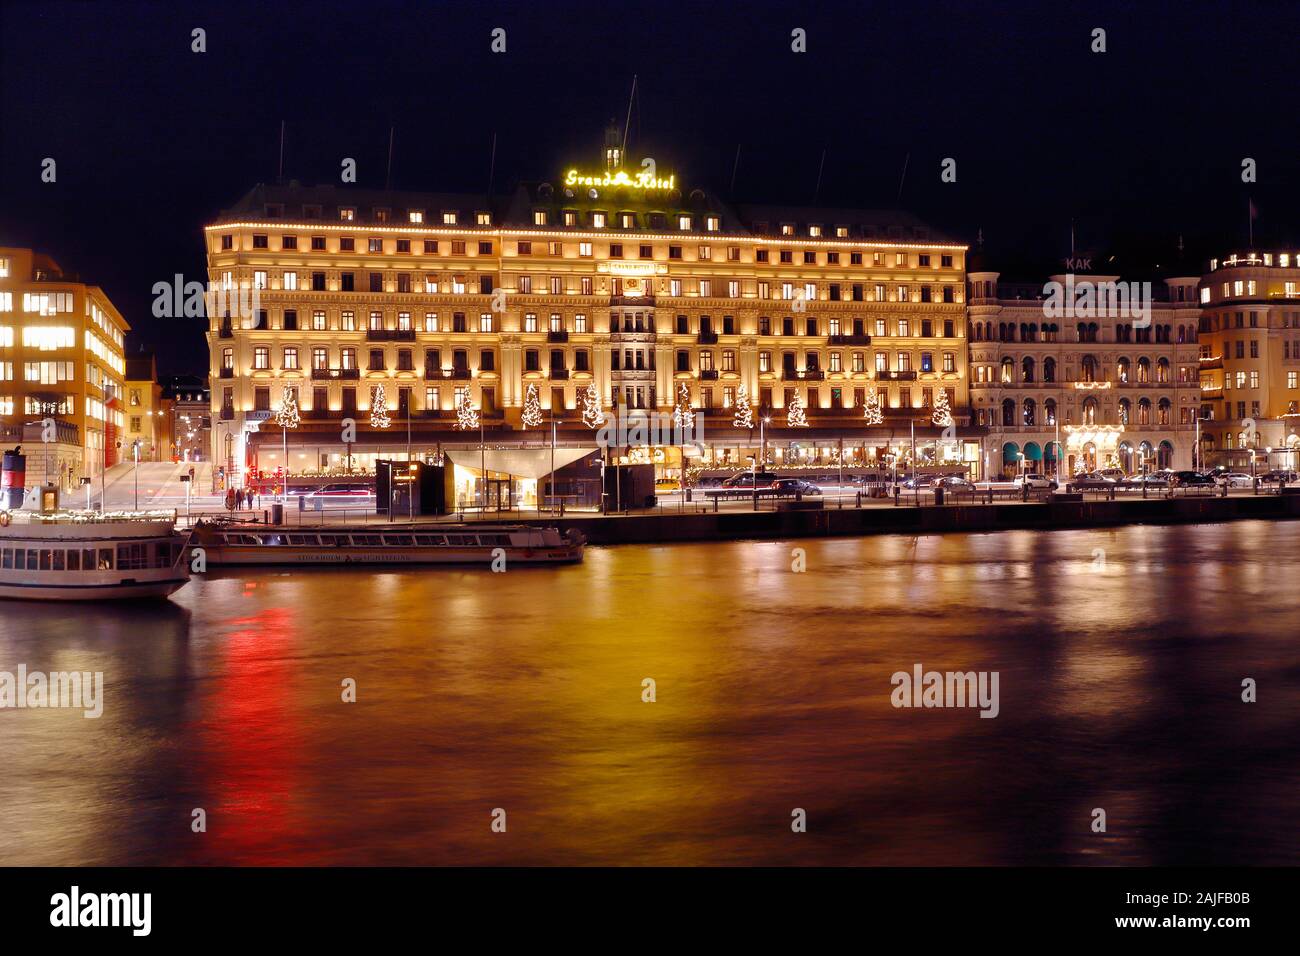 Estocolmo, Suecia - 3 de enero de 2020: Escena nocturna del Grand Hotel. Foto de stock